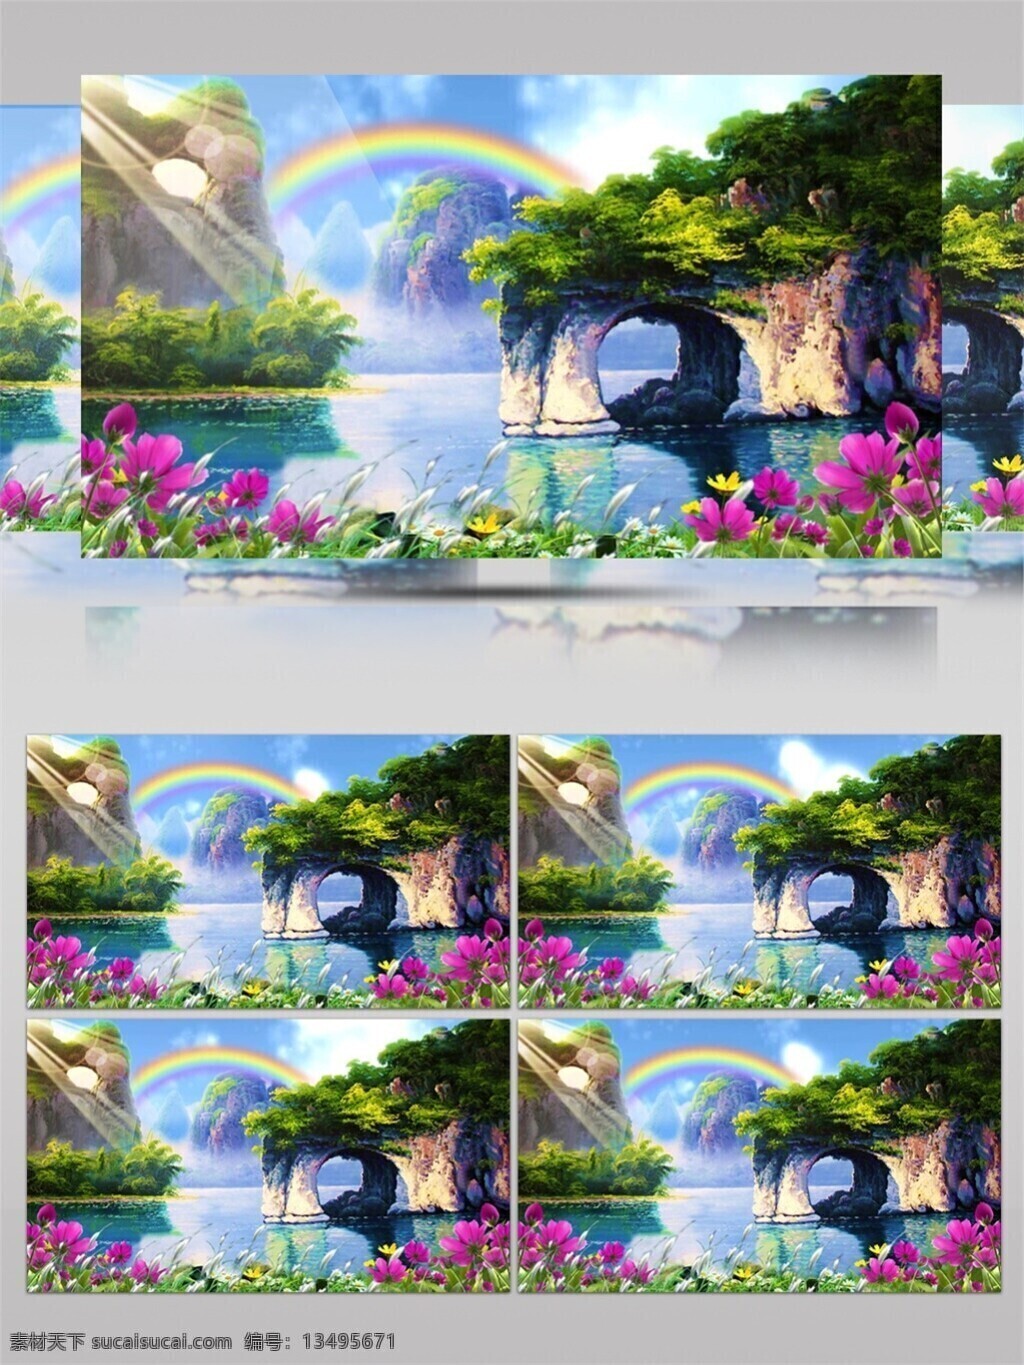 梦幻 彩虹 岛 视频 山谷 风景 艺术 绘画 手机壁纸 彩红 视觉享受 电脑屏幕保护